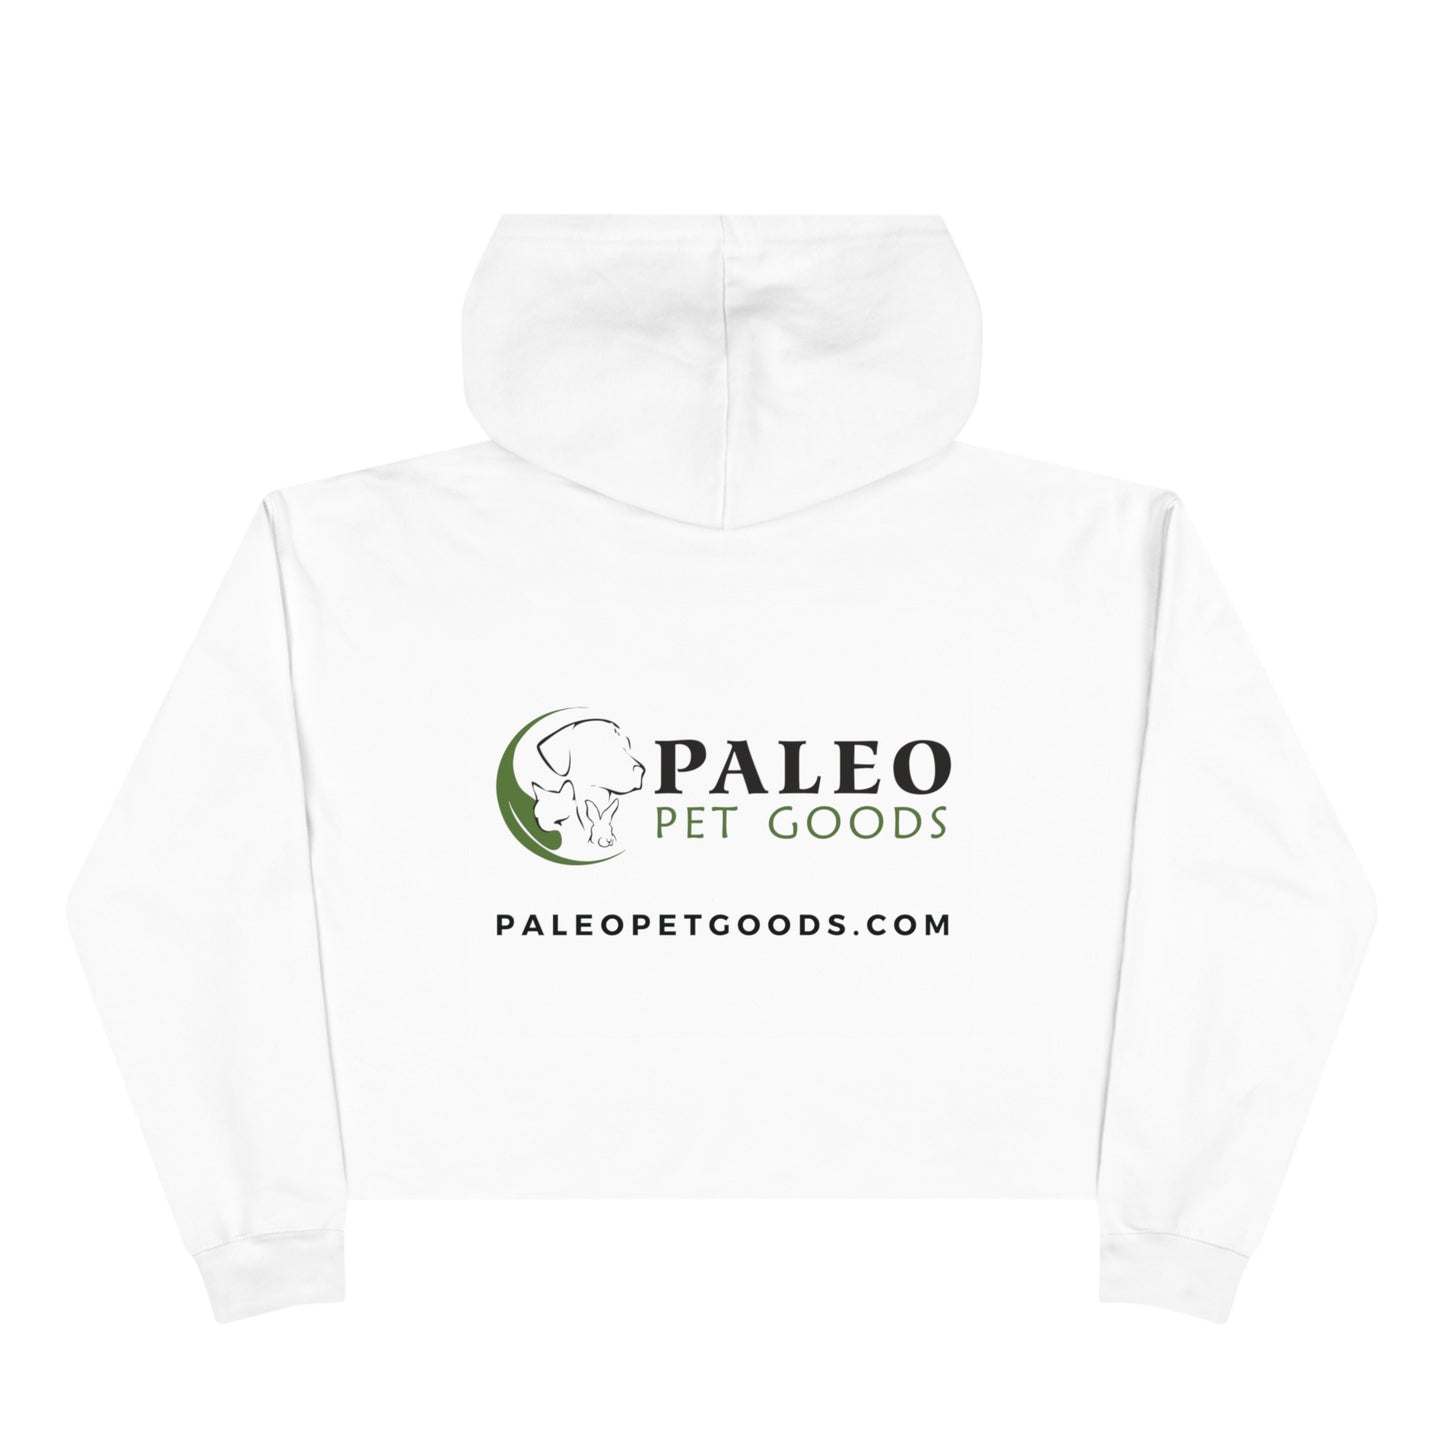 Paleo Pet Goods- Crop Hoodie